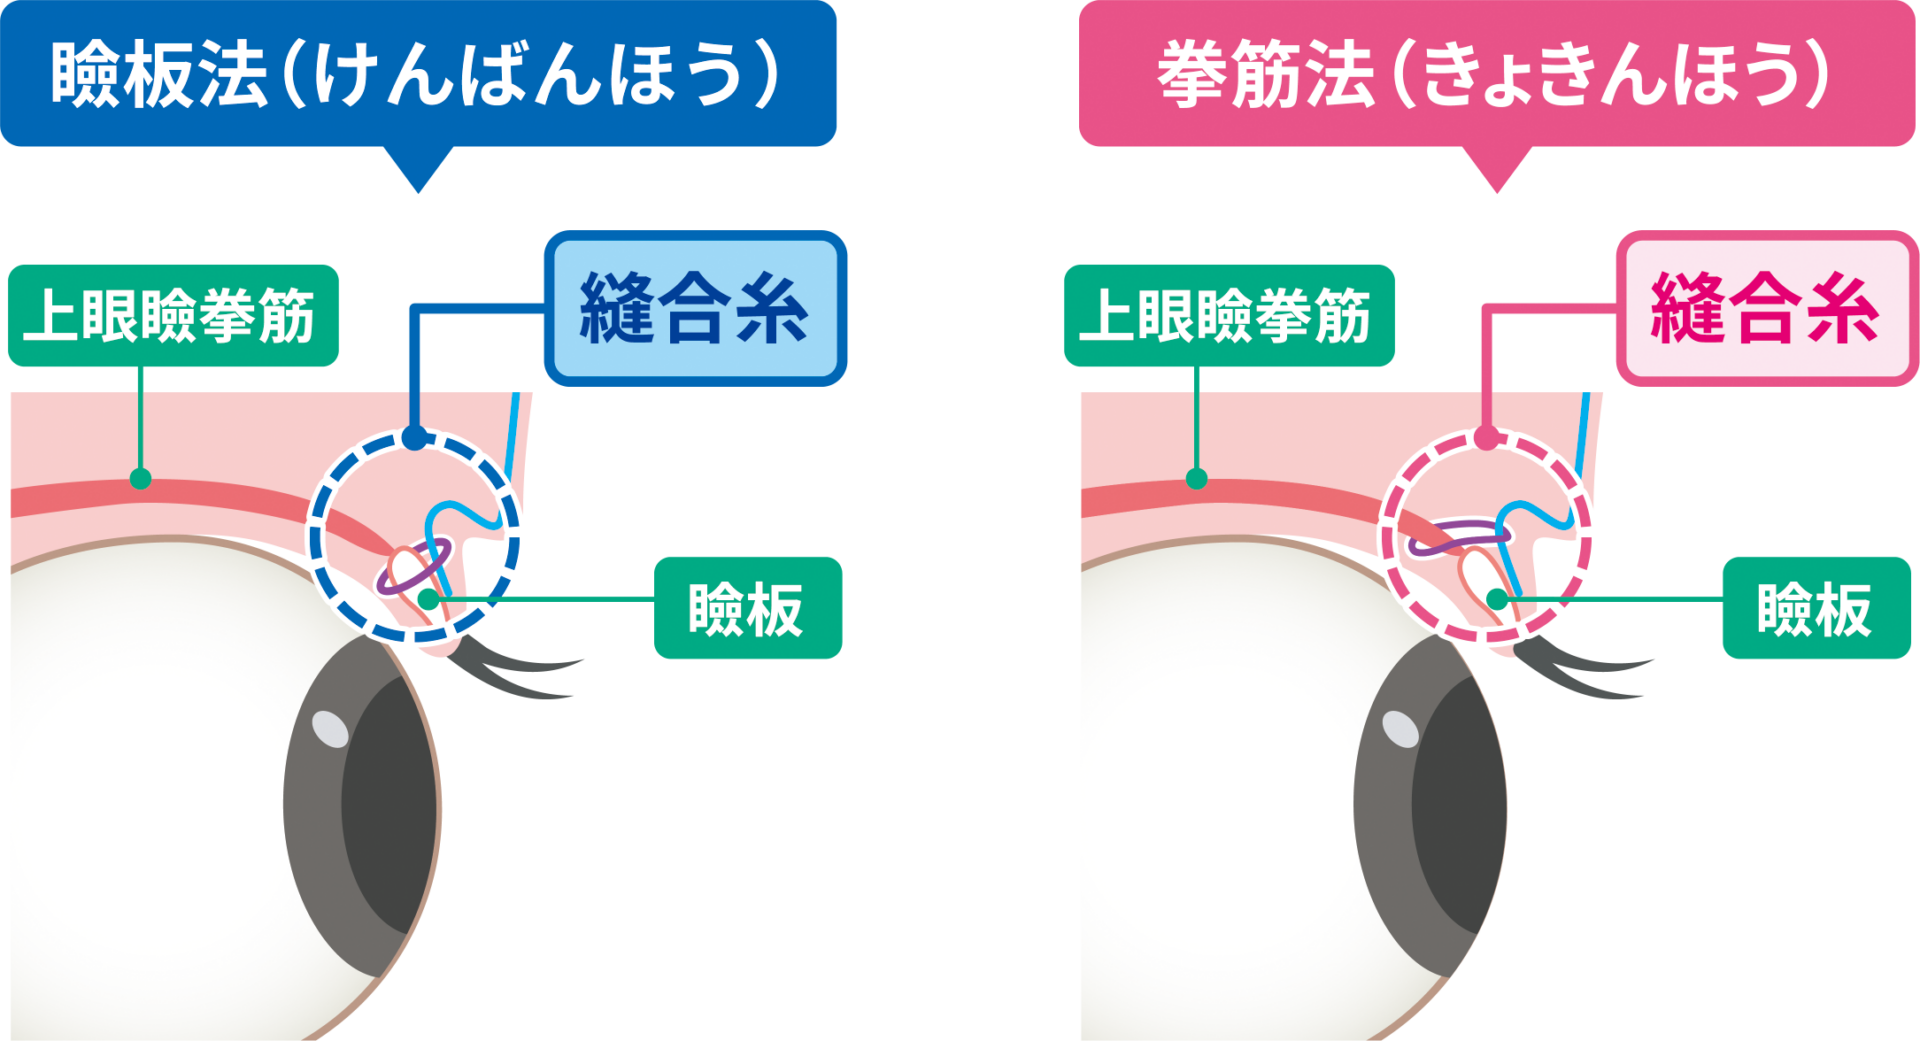 二重埋没の瞼板法と挙筋法